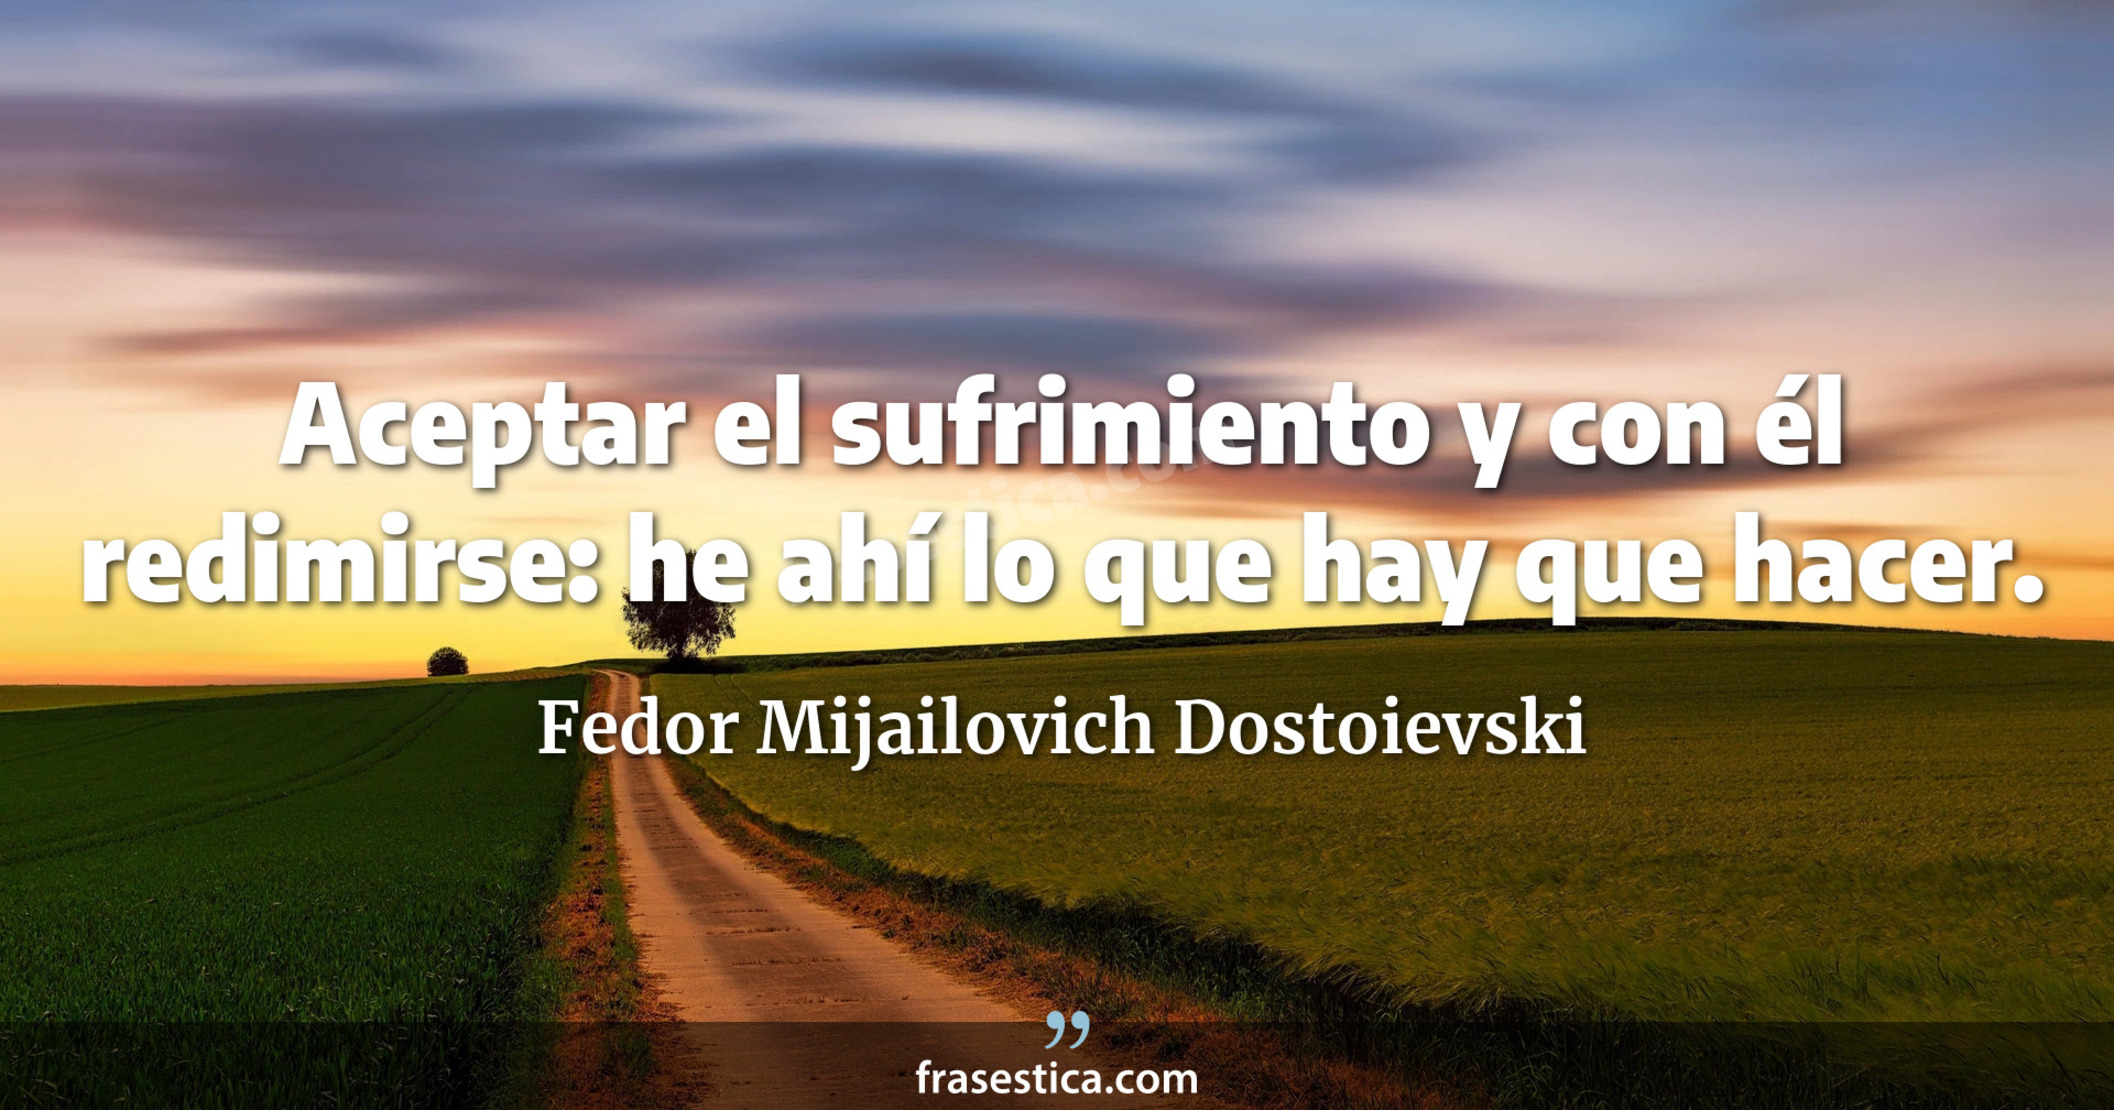 Aceptar el sufrimiento y con él redimirse: he ahí lo que hay que hacer. - Fedor Mijailovich Dostoievski